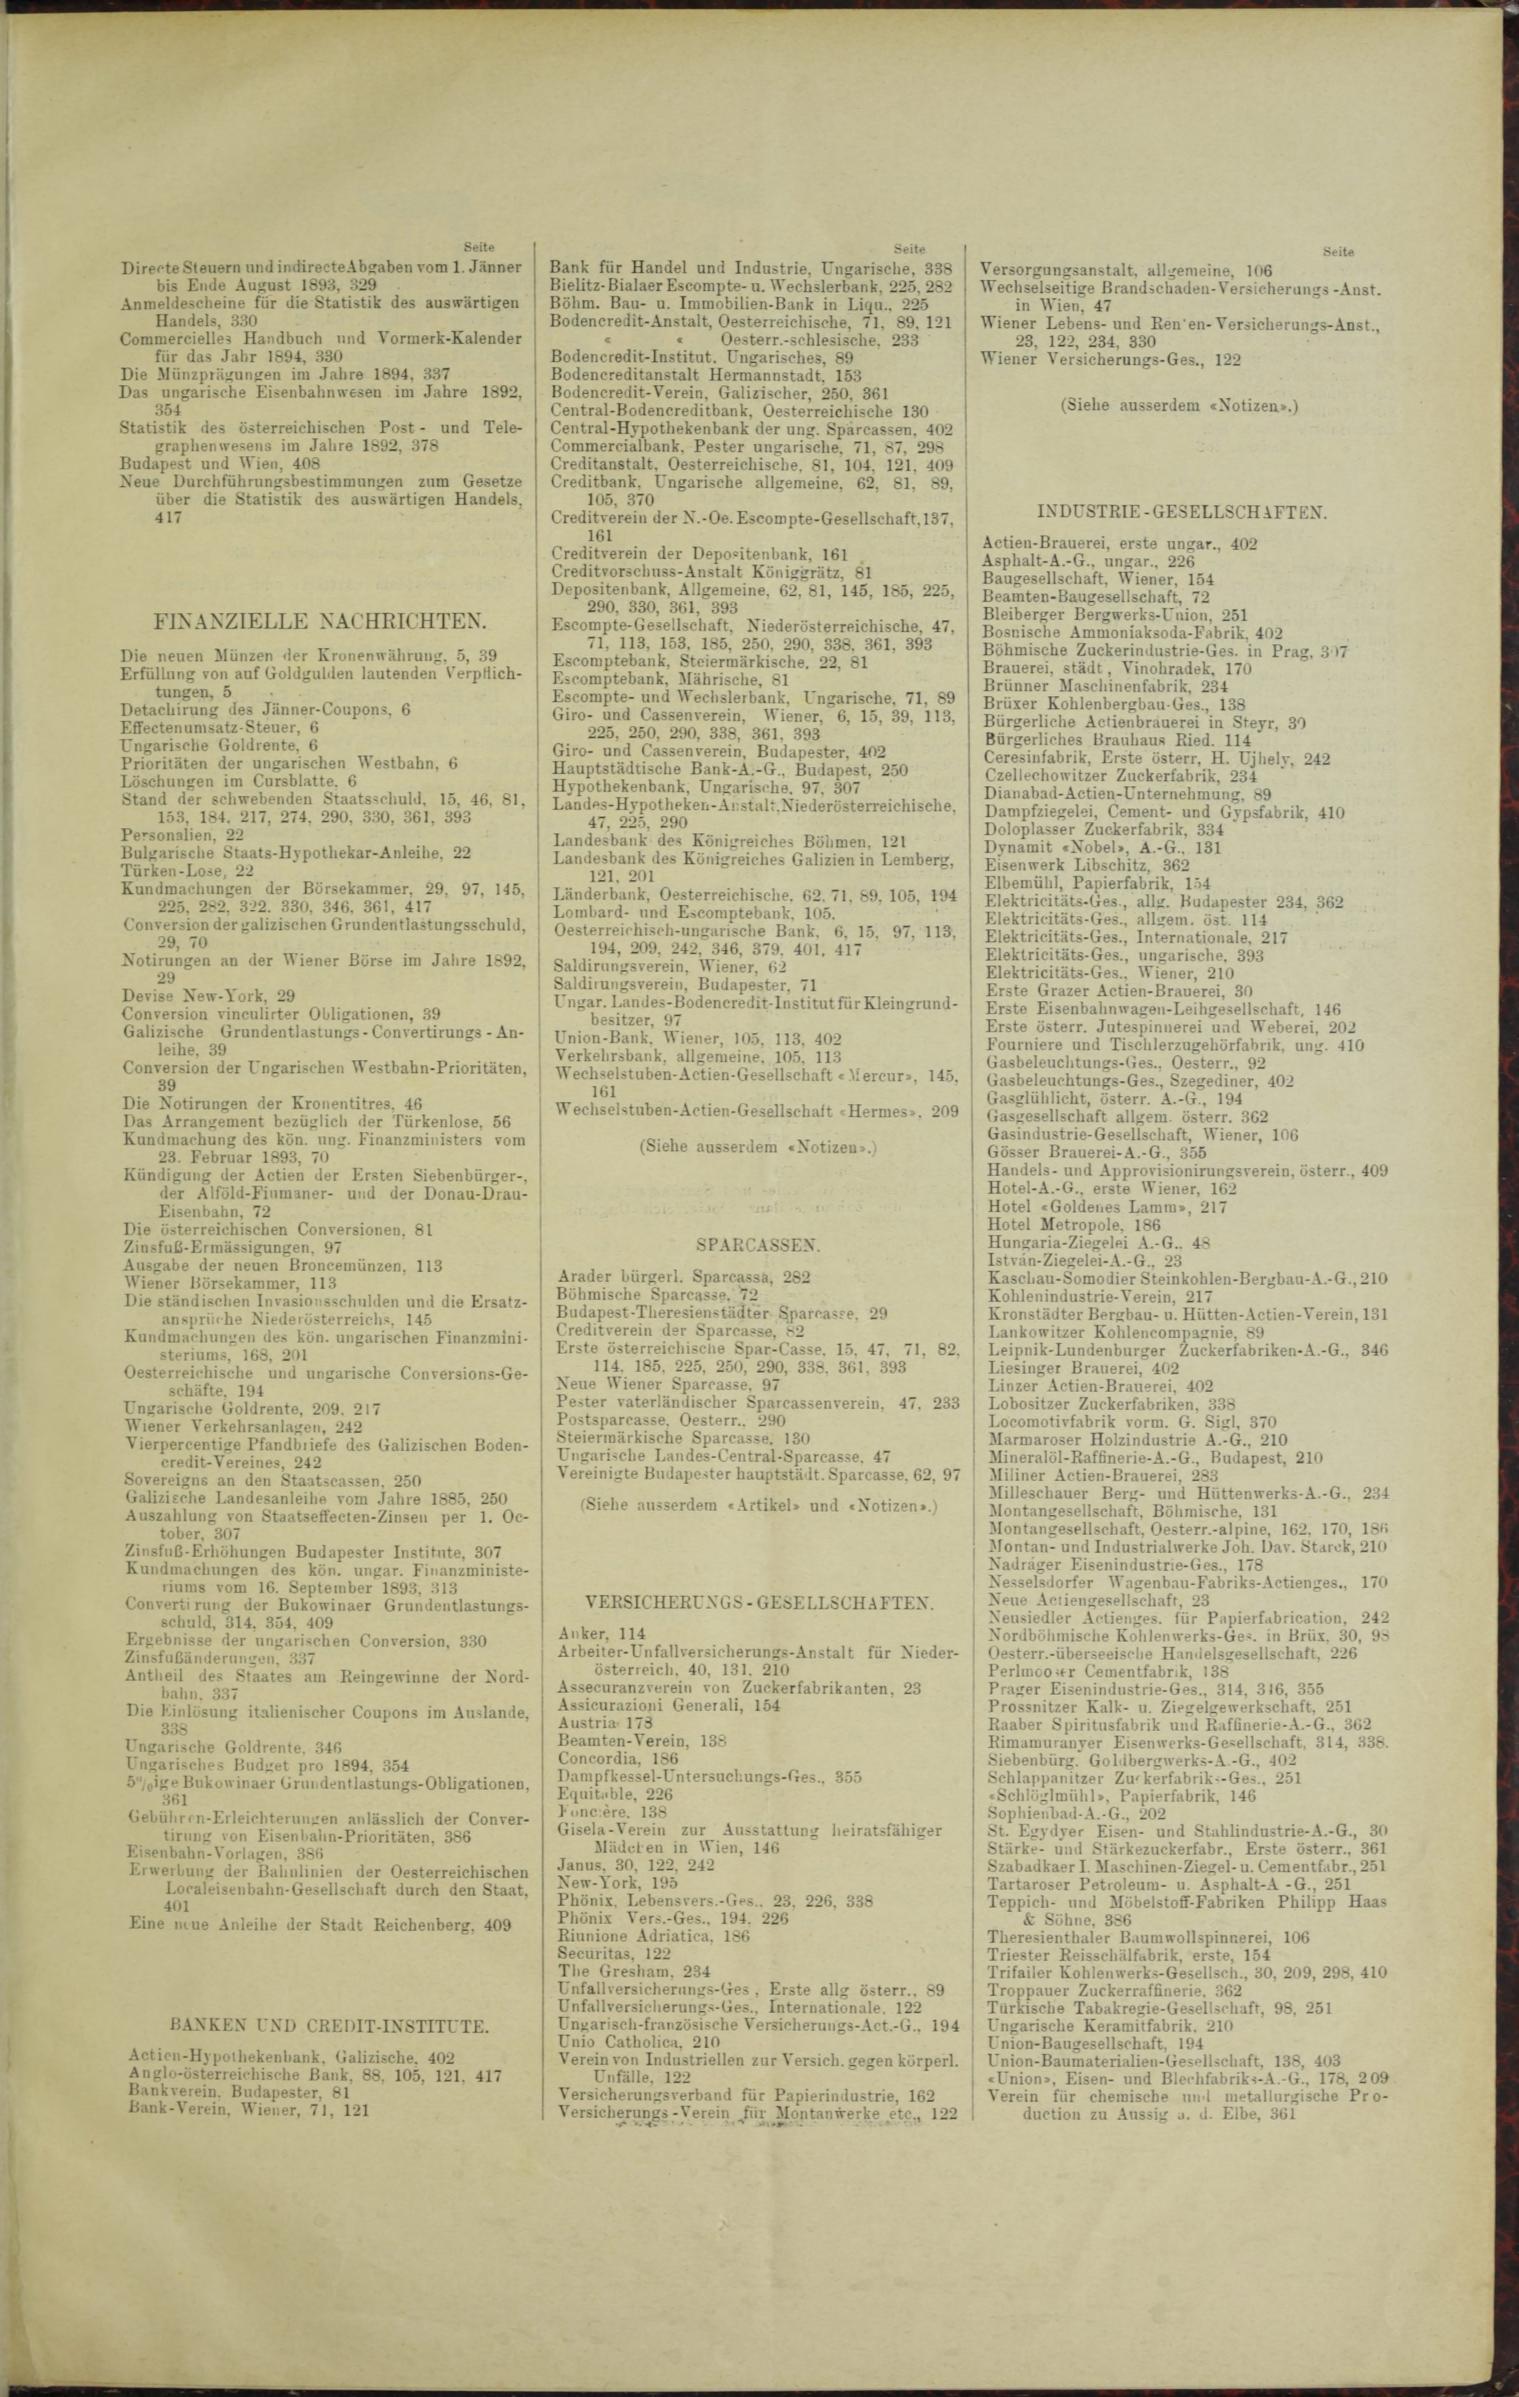 Der Tresor 22.06.1893 - Seite 11